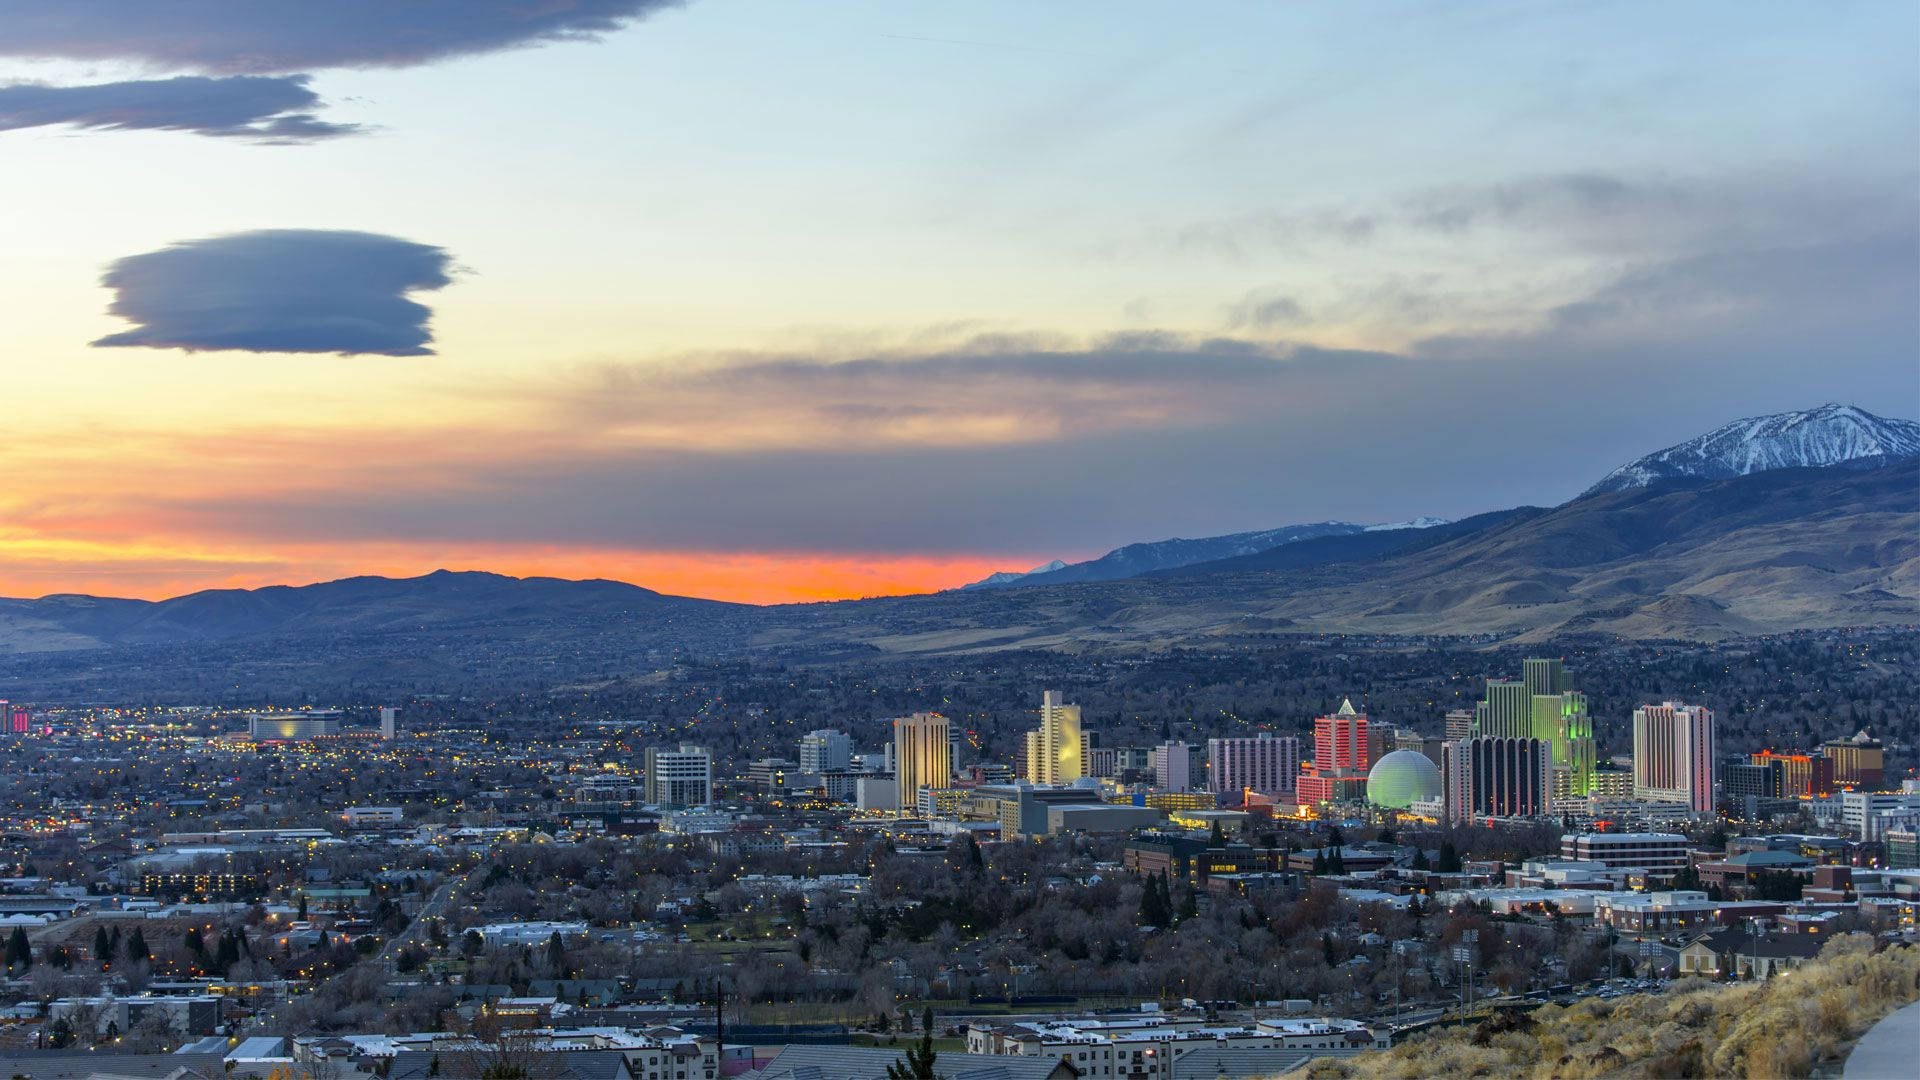 El Asombroso Panorama Del Skyline De Reno Al Caer El Sol. Fondo de pantalla